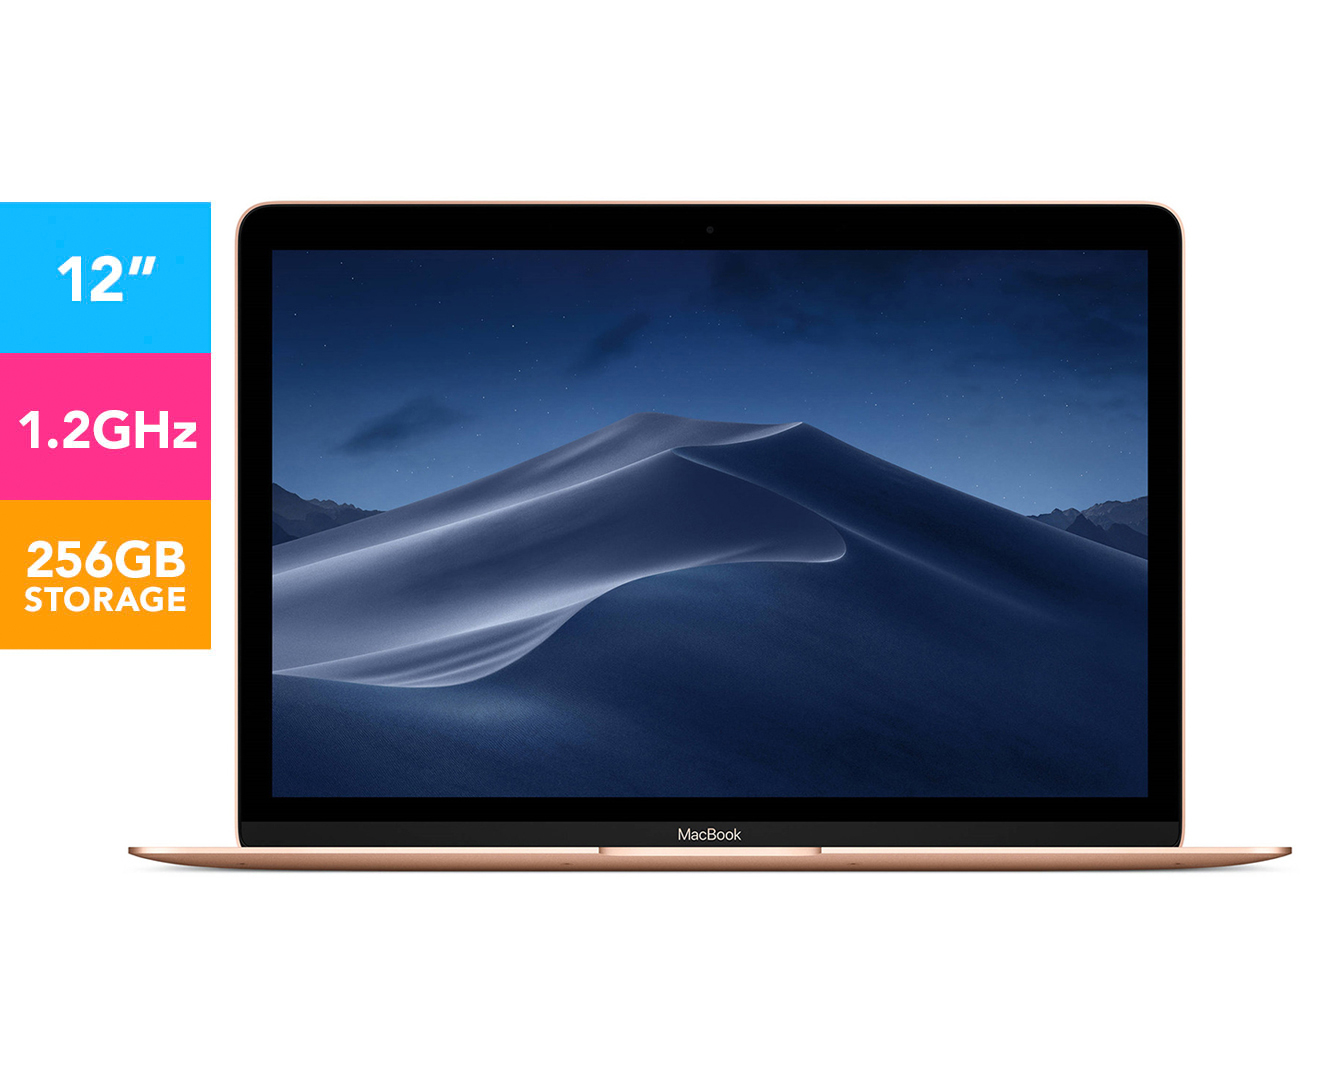 12-inch macbook update 2018